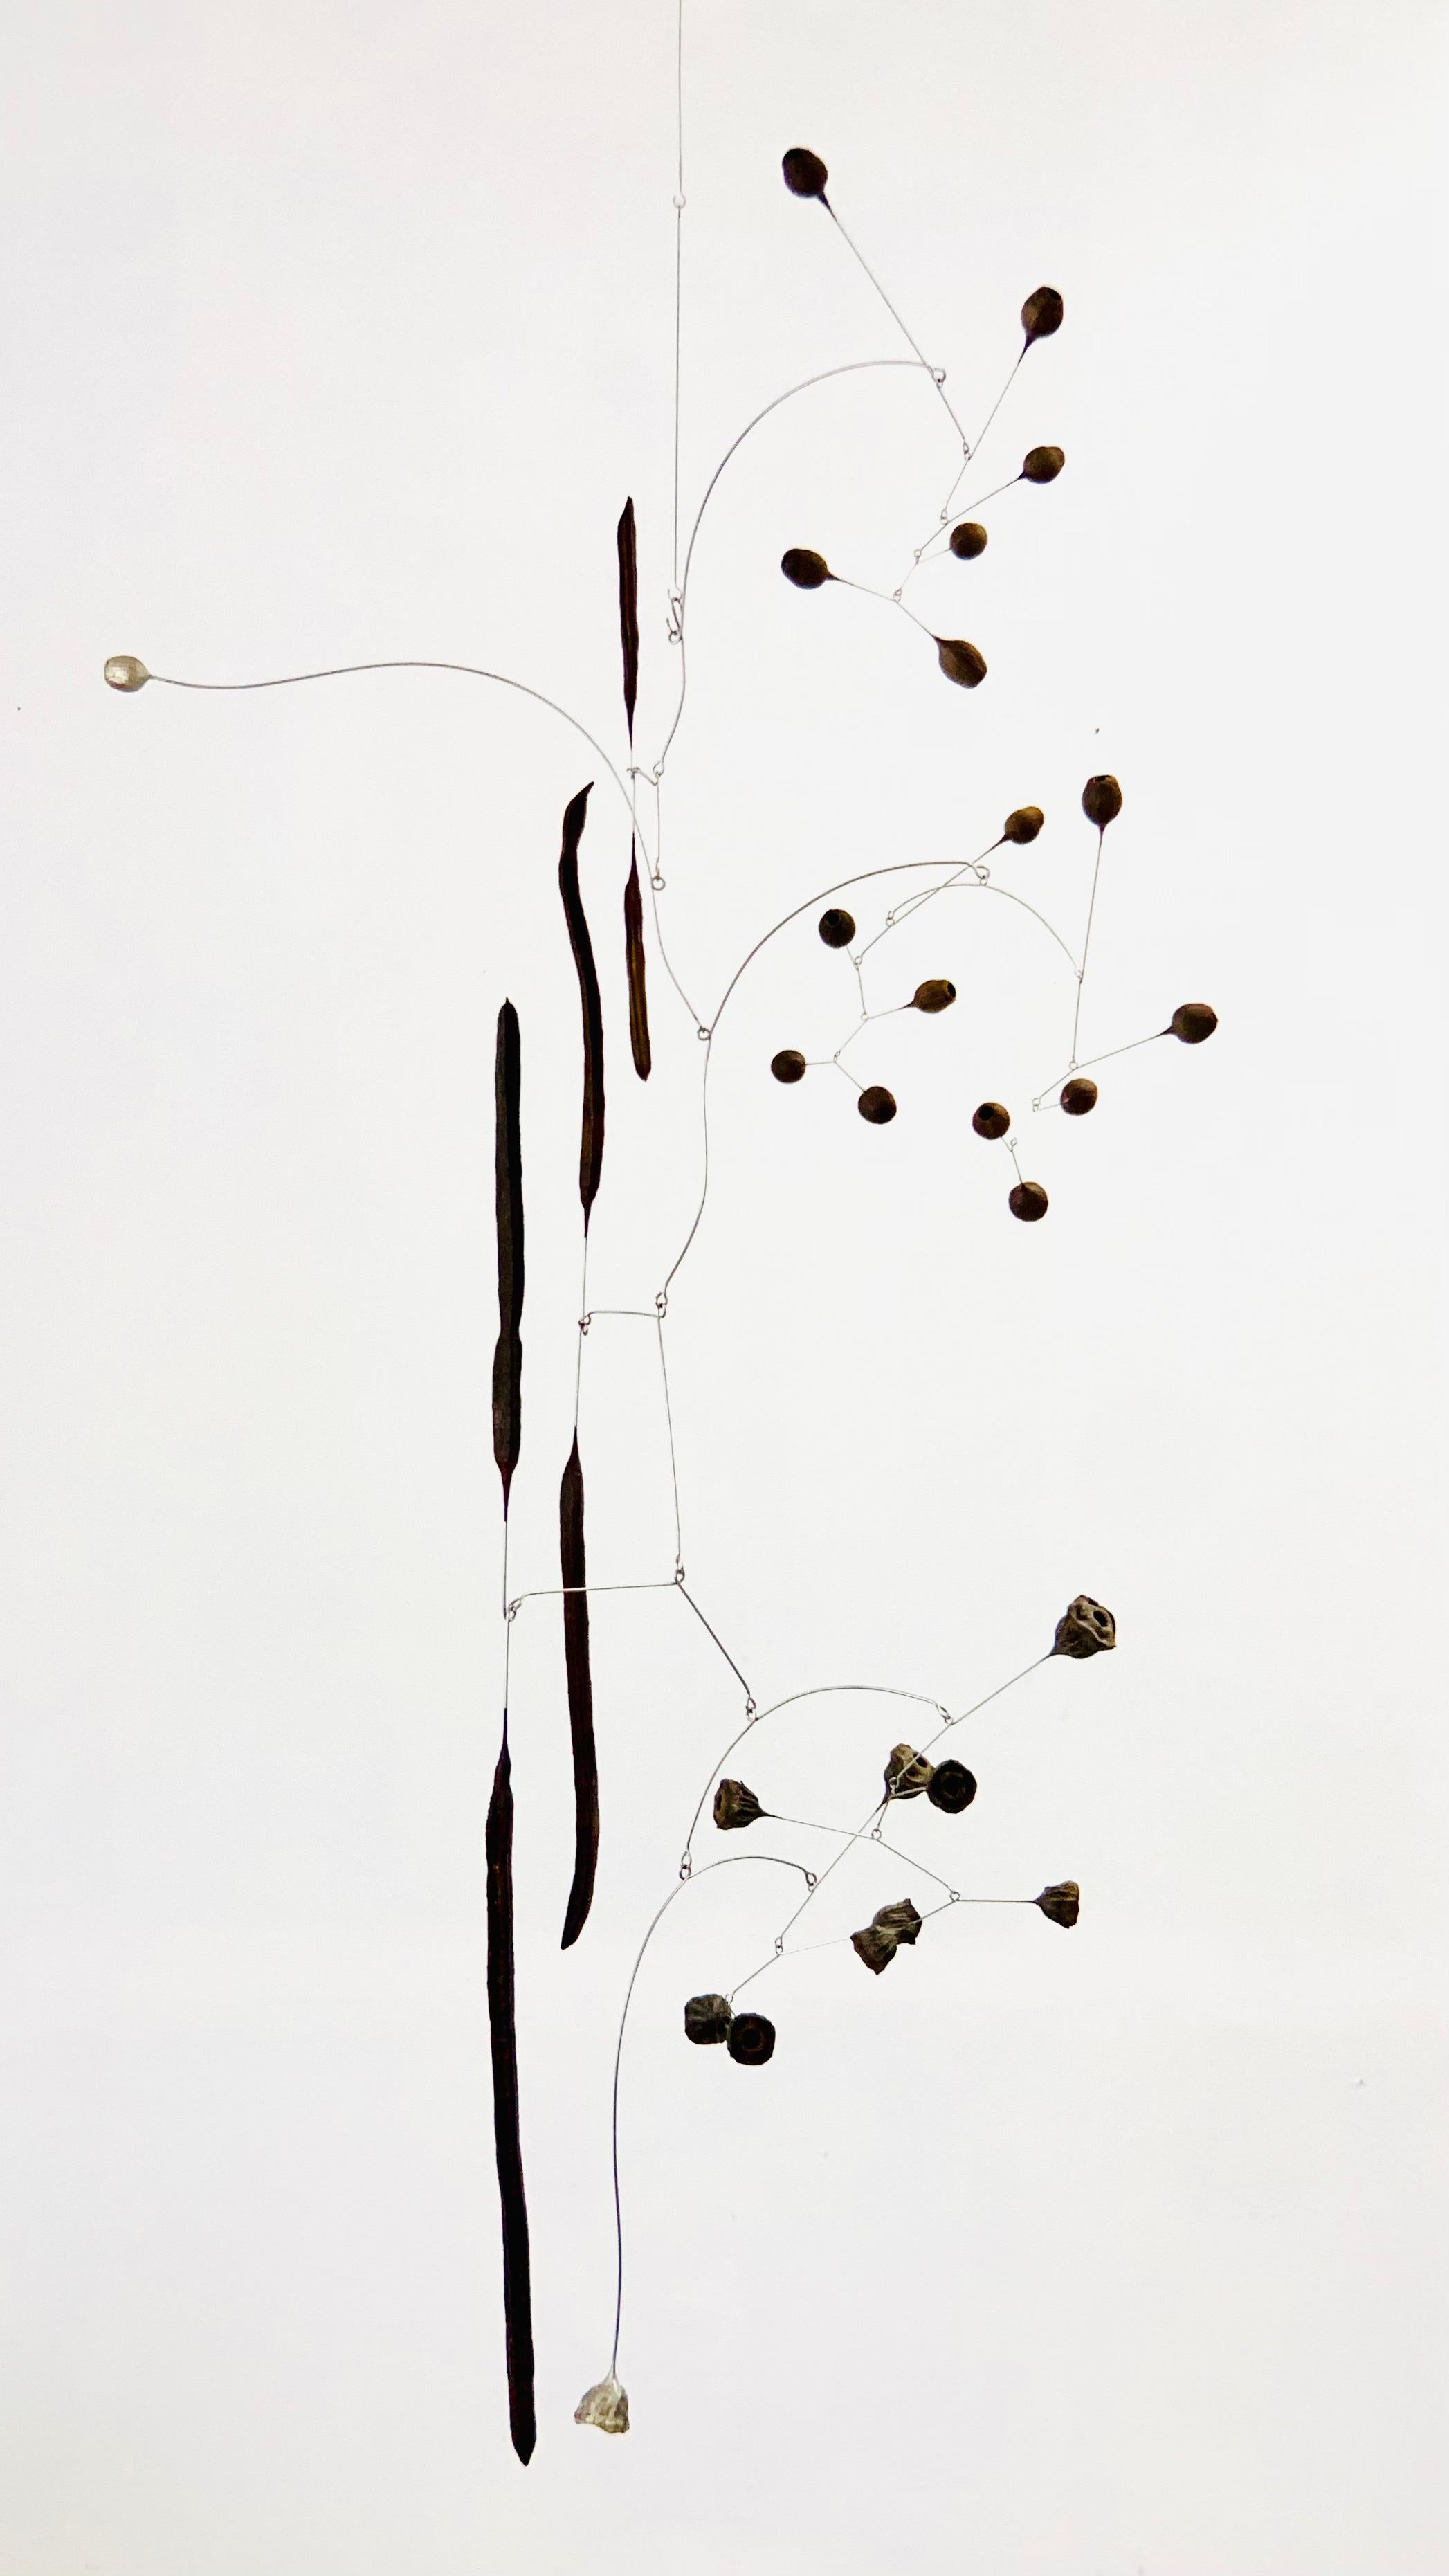 Sculpture suspendue à la pluie de Karolina Maszkiewicz
Unique en son genre.
Dimensions : P 91,4 x L 91,4 x H 177,8 cm. 
MATERIAL : Bronze blanc, acier inoxydable, eucalyptus et gousses de graines en médaillon doré.

Karolina Maszkiewicz est une